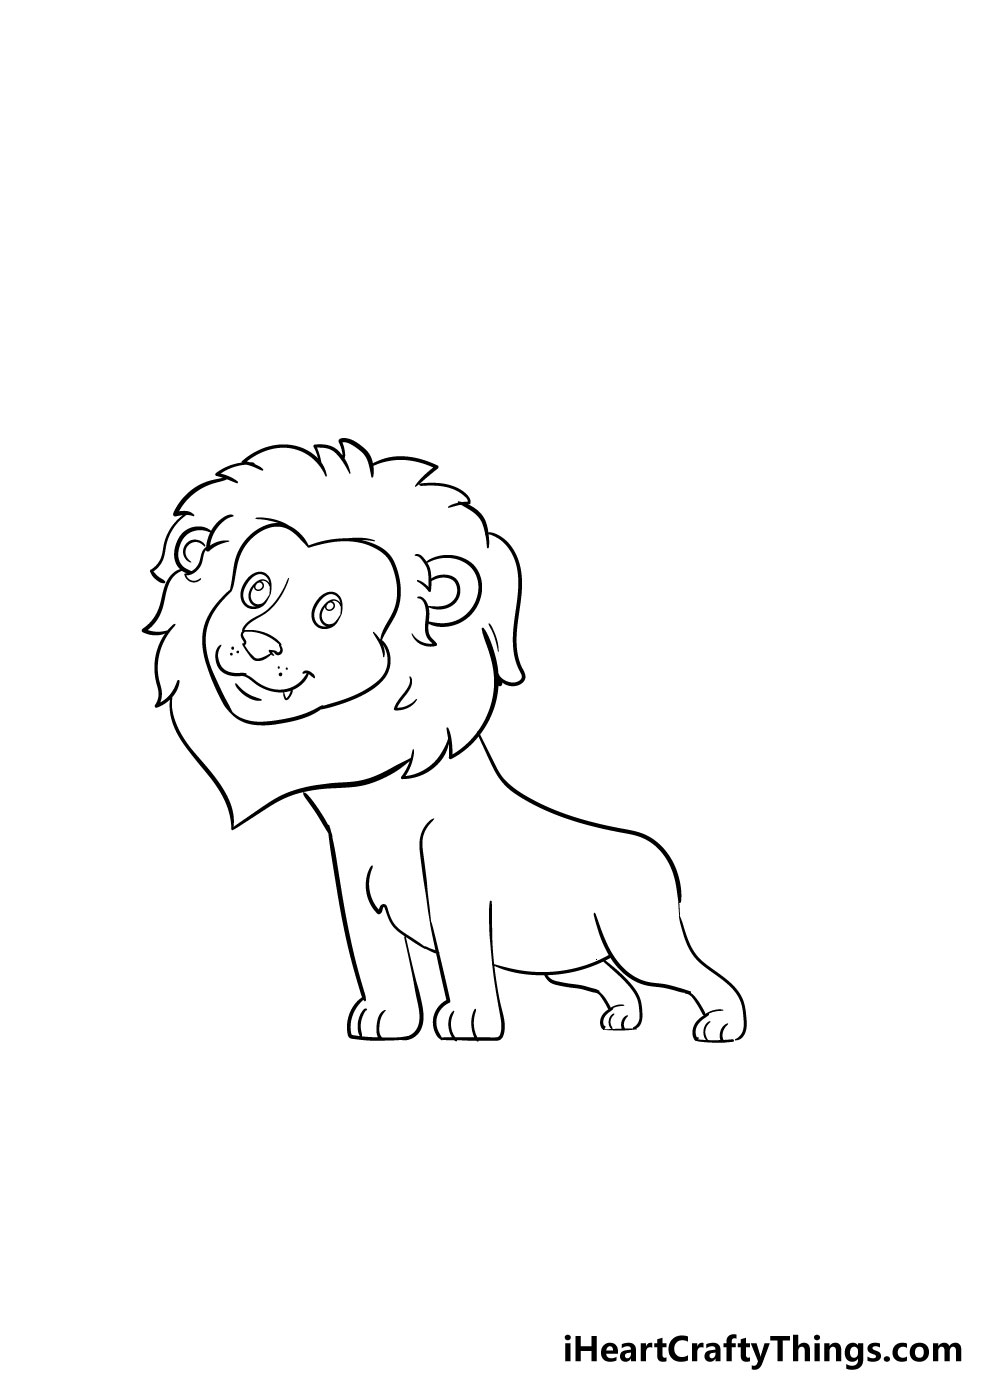 How to draw a lion 6 - Hướng dẫn cách vẽ con sư tử đơn giản với 8 bước cơ bản